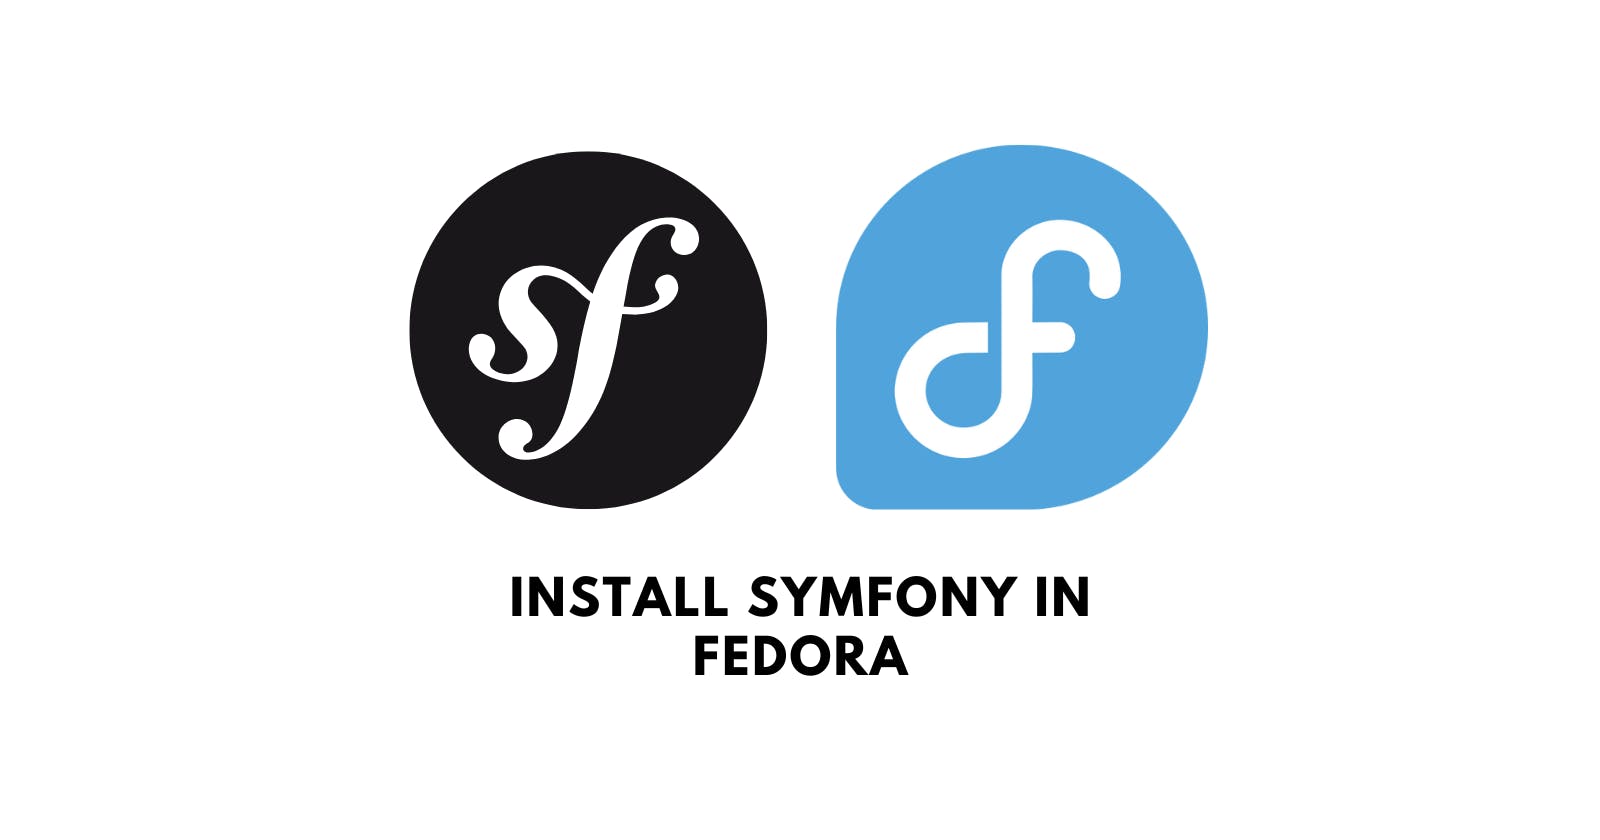 Install Symfony in Fedora